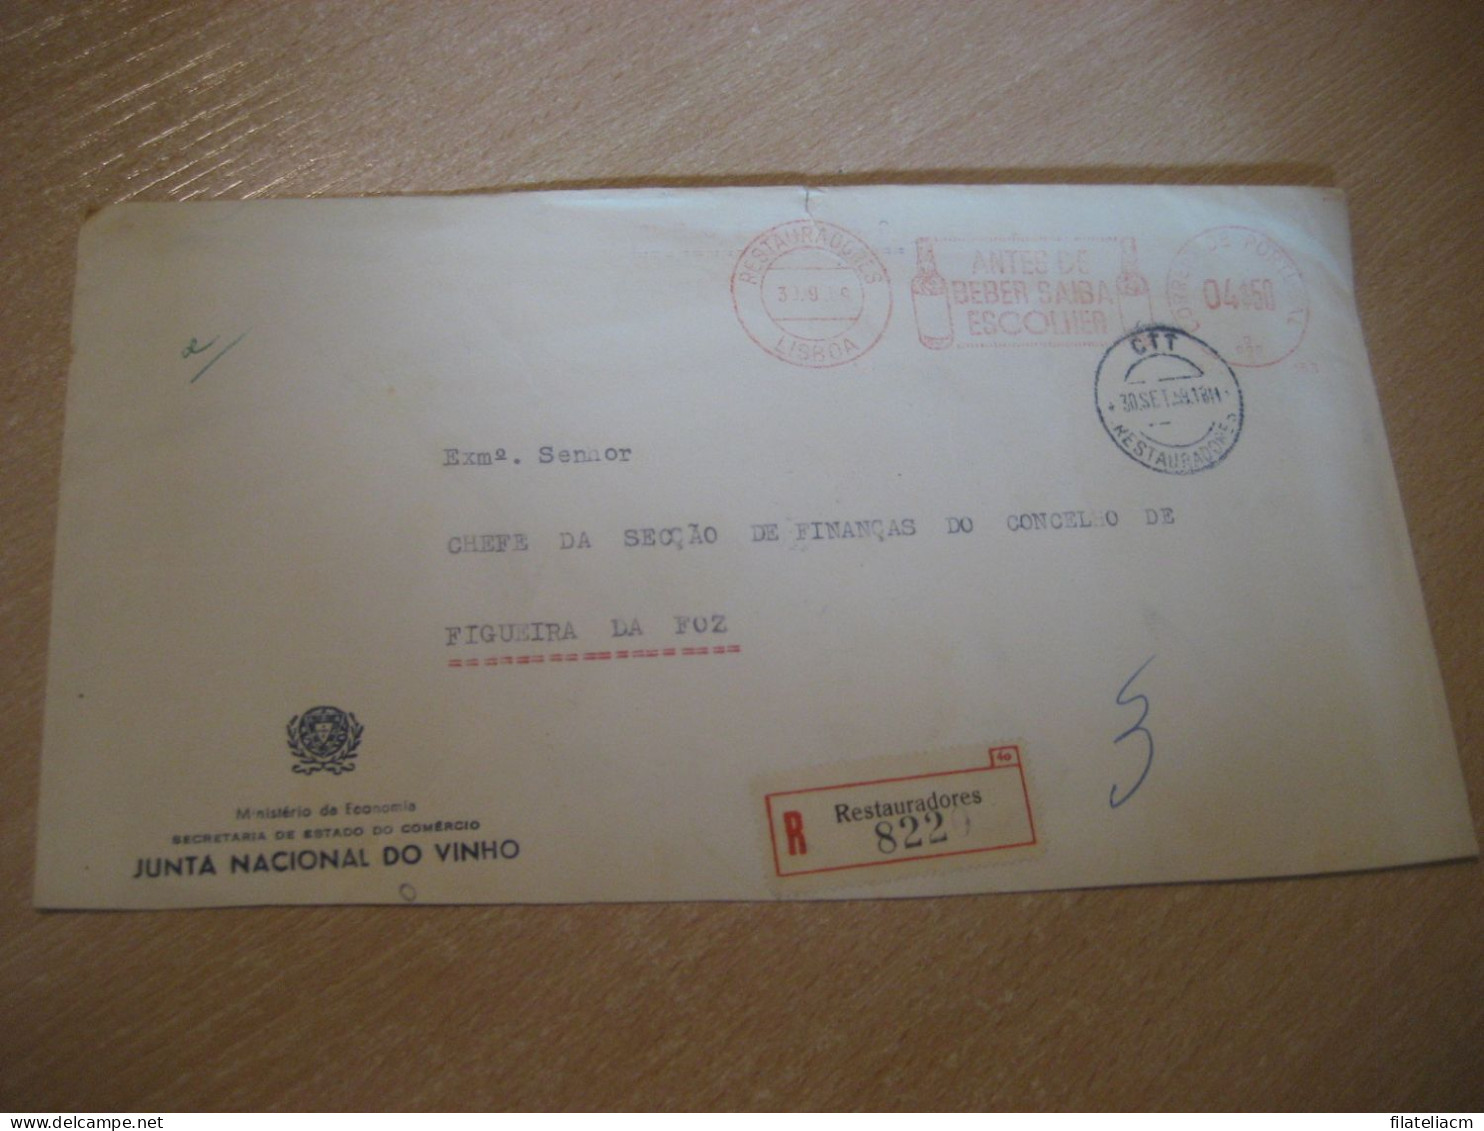 LISBOA 1959 To Figueira Da Foz Beber Junta Vinho Wine Enology Drink Registered Meter Mail Slight Faults Cover PORTUGAL - Briefe U. Dokumente